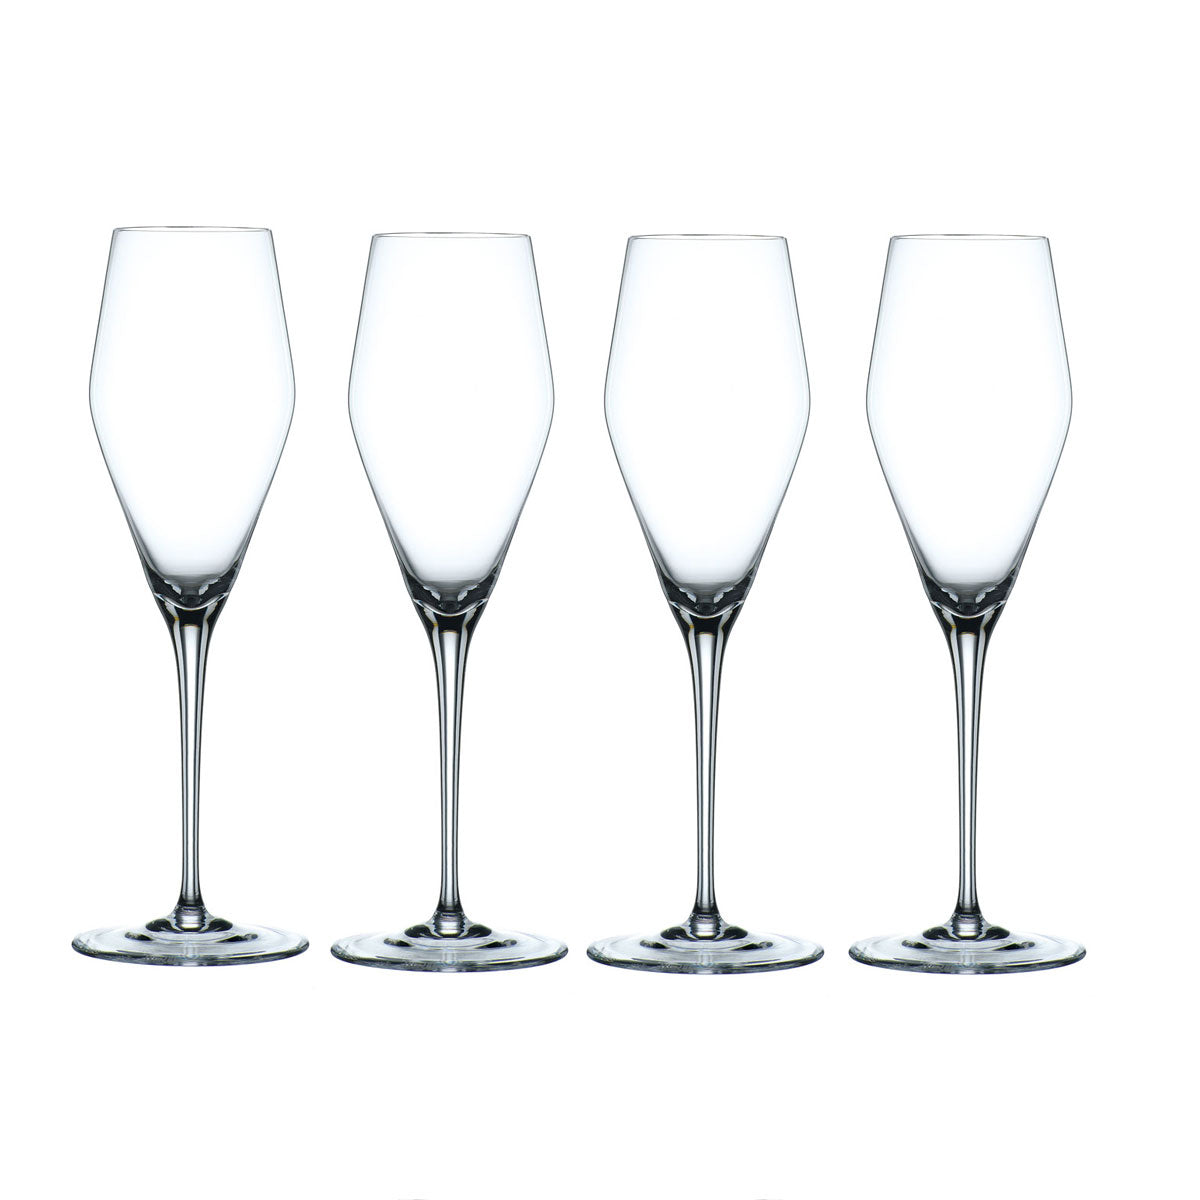 Nachtmann ViNova Champagne Crystal glasses, set of 4